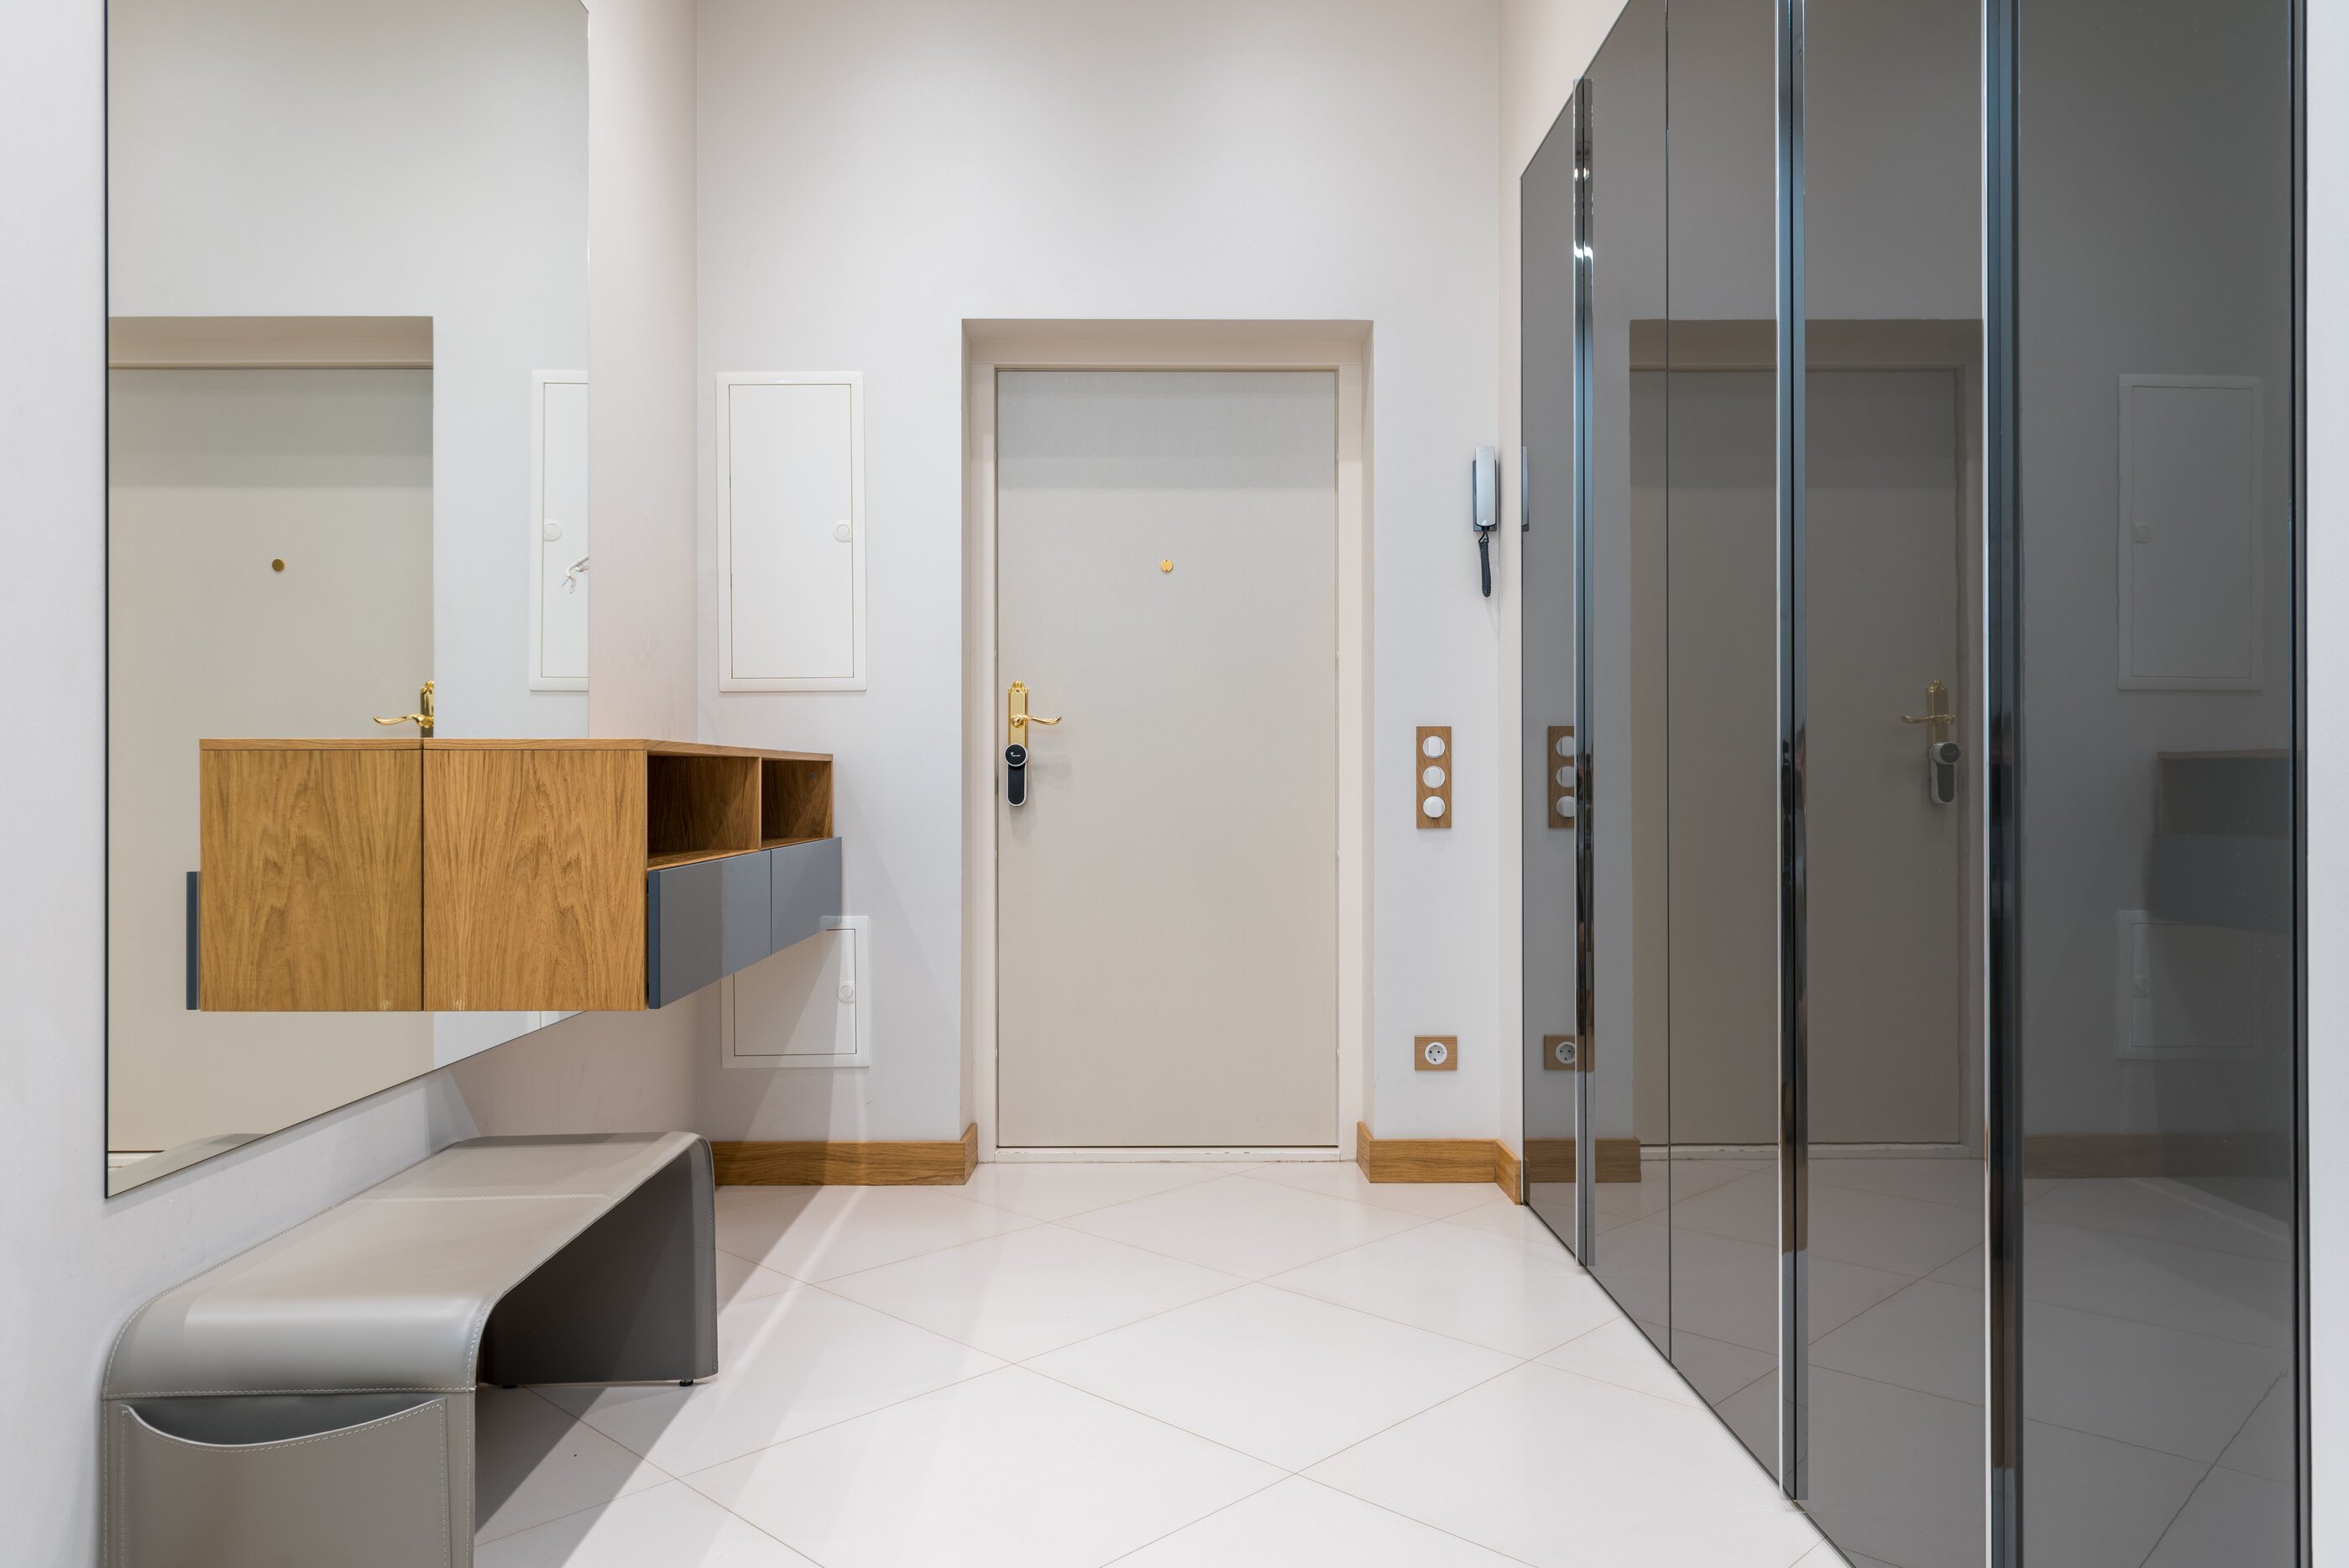 Presvetlená, minimalistická predsieň pozostávajúca z veľkej, lesklej, zasúvacej skrine sivej farby s leskom, dreveného botníku z masívneho dreva a minimalistickej lavice na sedenie v sivej farbe, nad ktorou je zrkadlo bez rámu. Lesklá podlaha a vchodové dvere sú bielej fabry